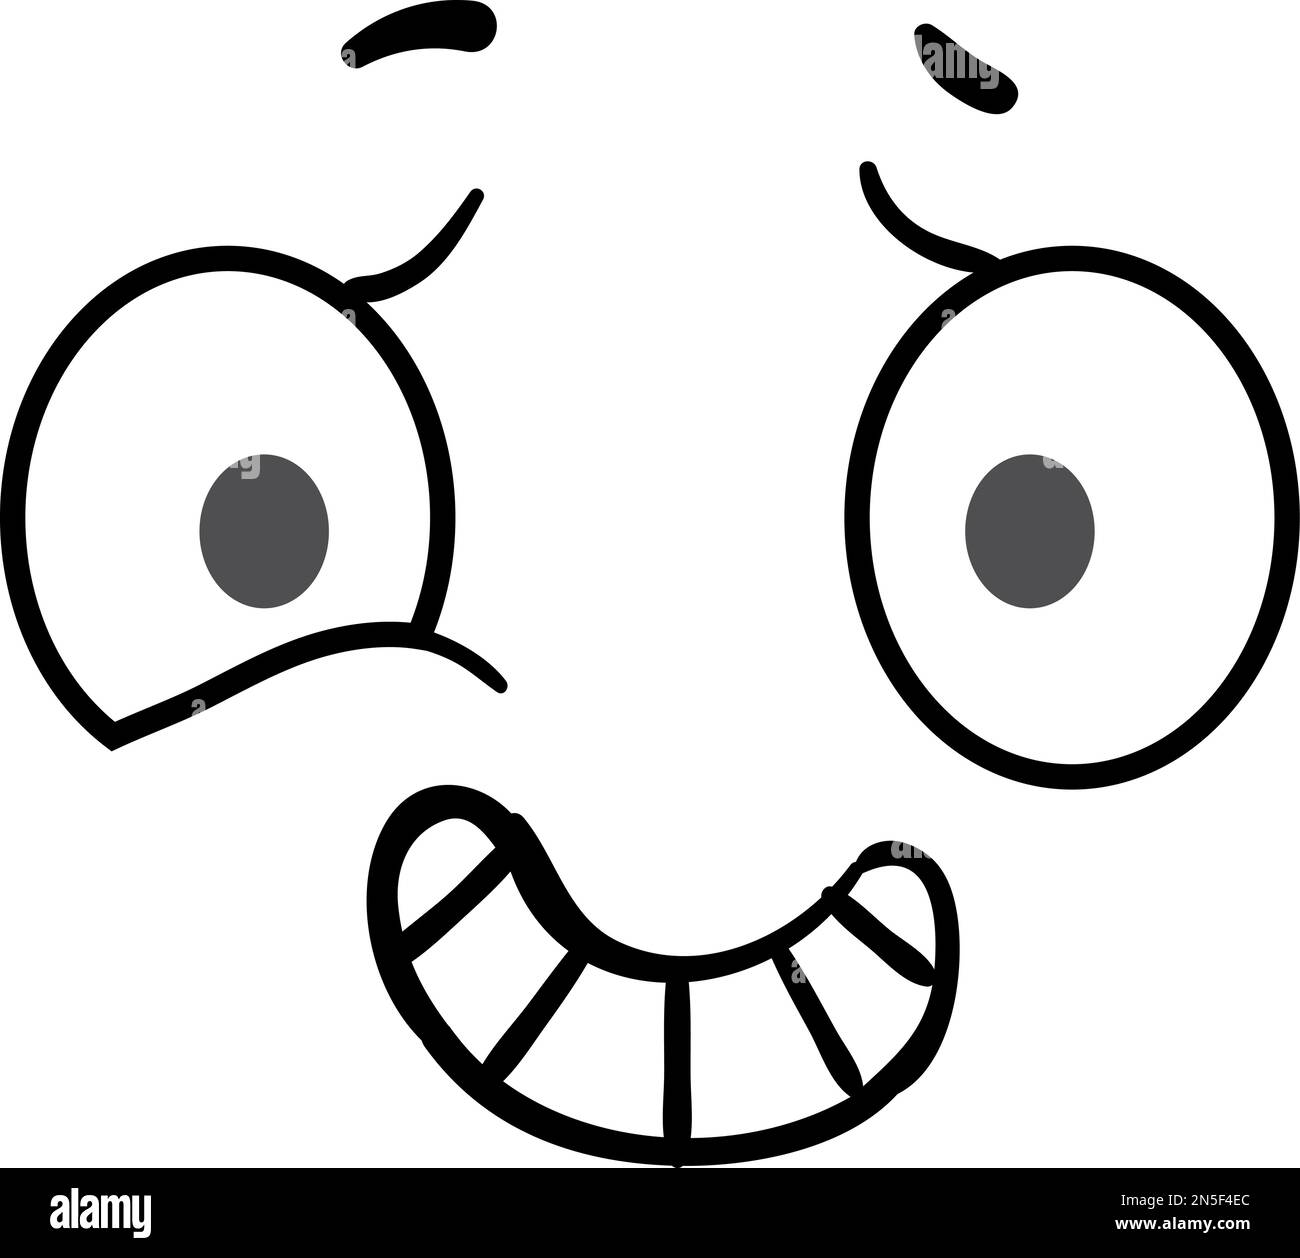 Sonrisa de miedo Imágenes de stock en blanco y negro - Alamy